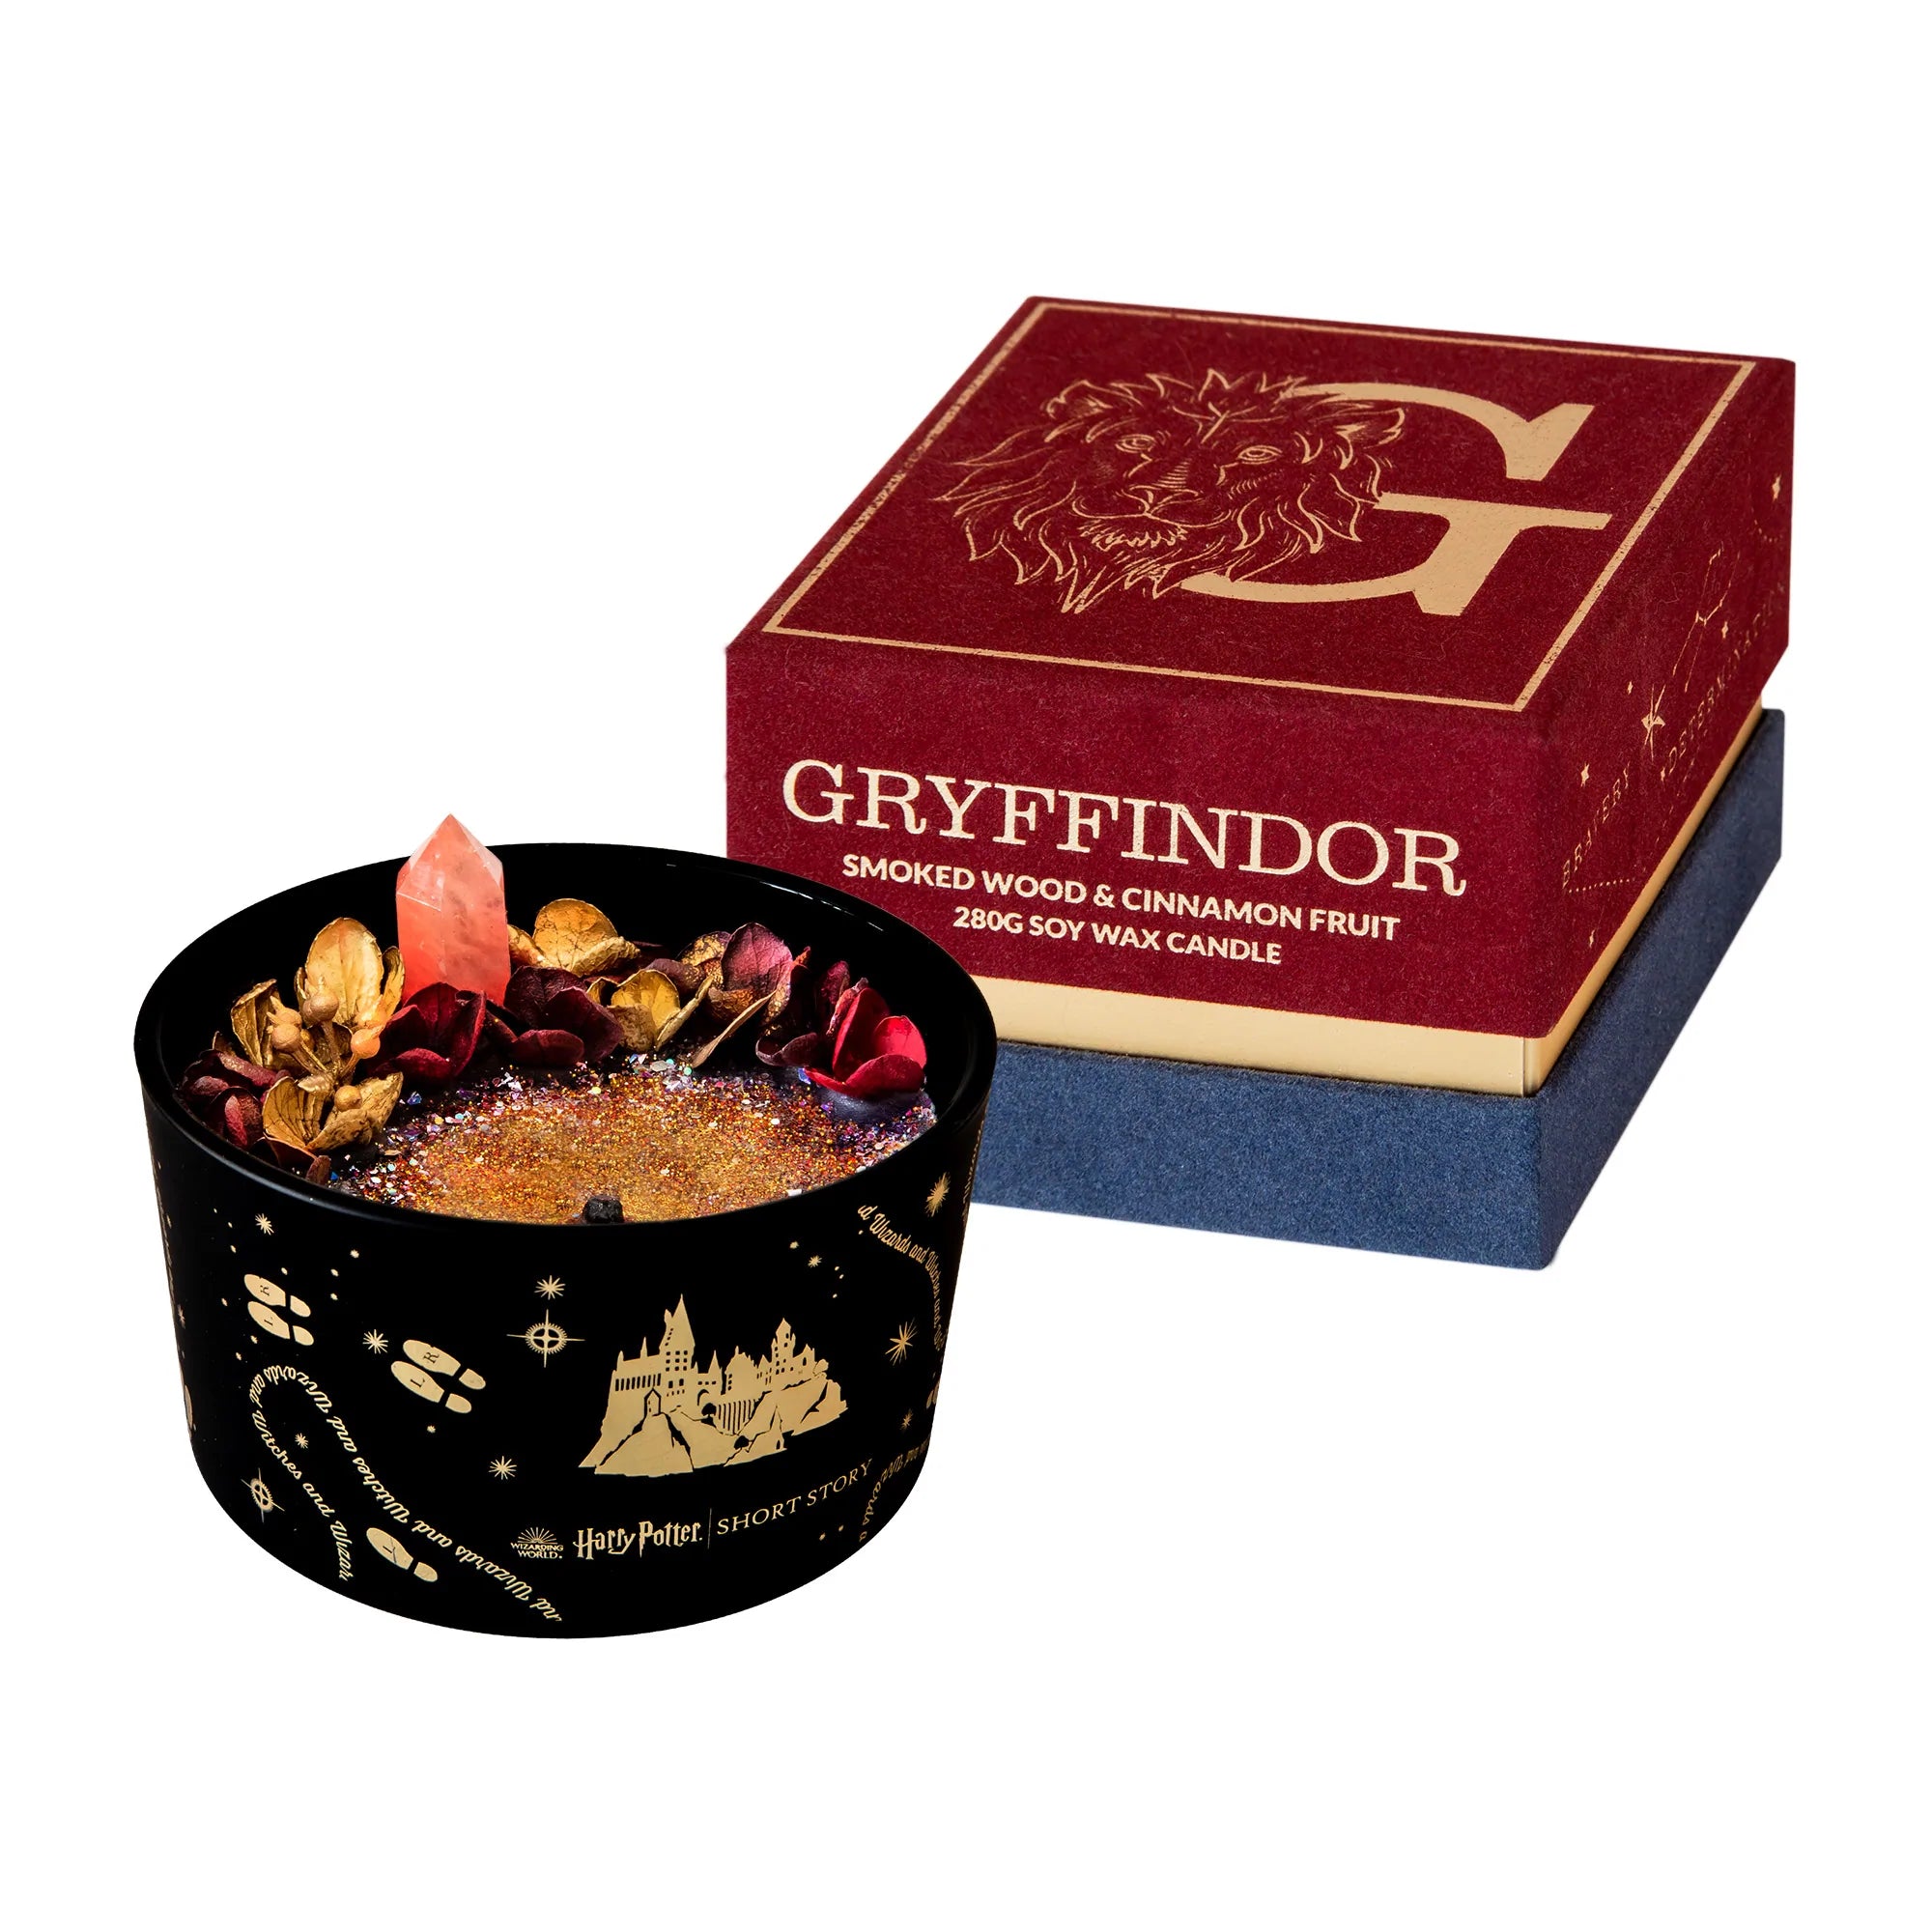 Harry Potter Candle - Gryffindor (Smoked Wood & Cinnamon Fruit)